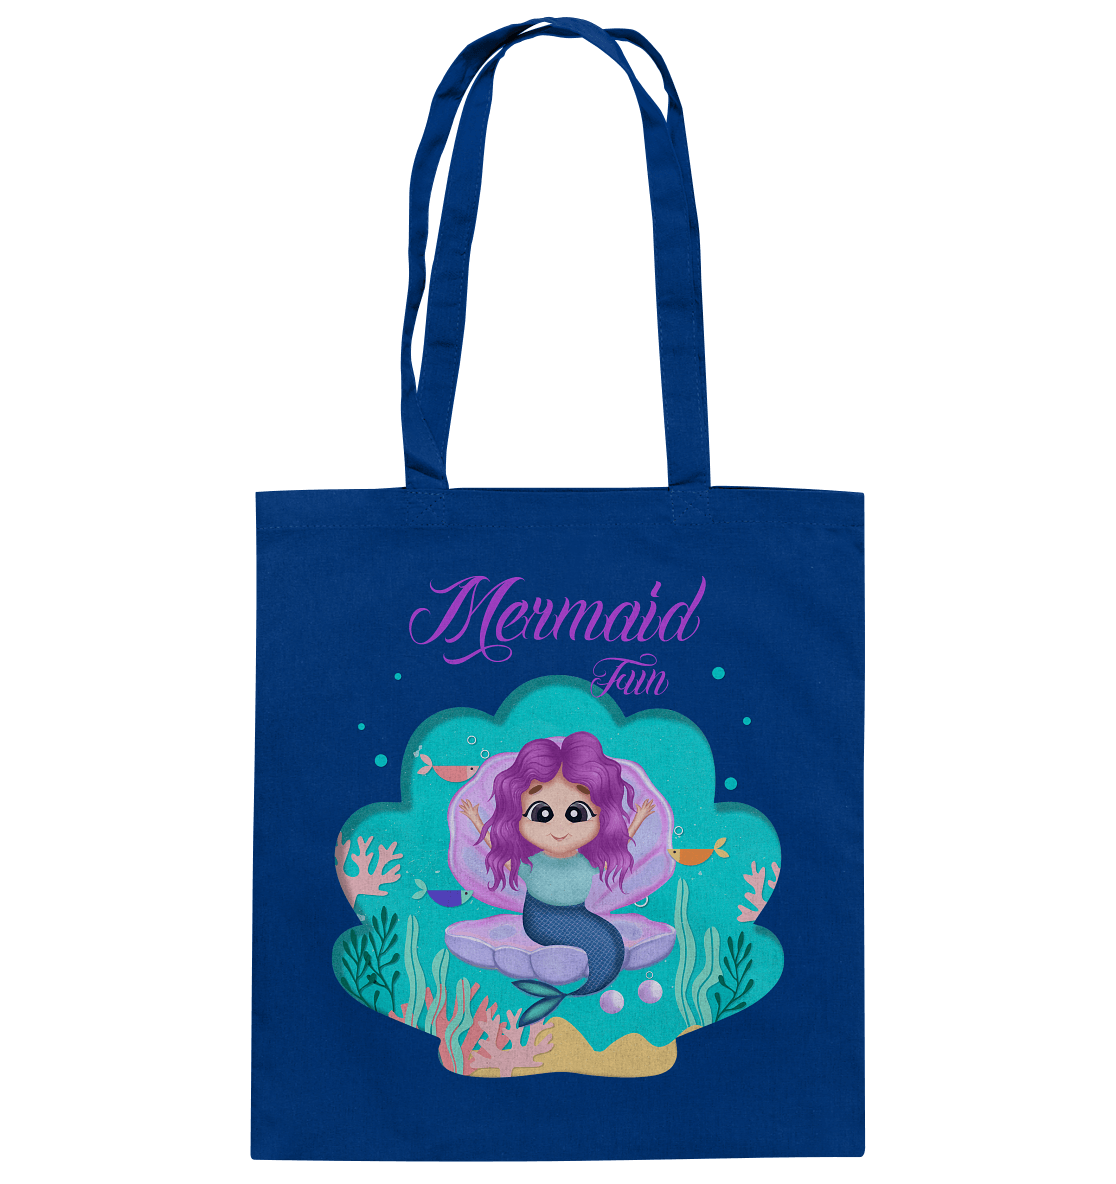 Jutebeutel Baumwolltasche in Royal Blue mit handgezeichneten Cartoon Mermaid Design.